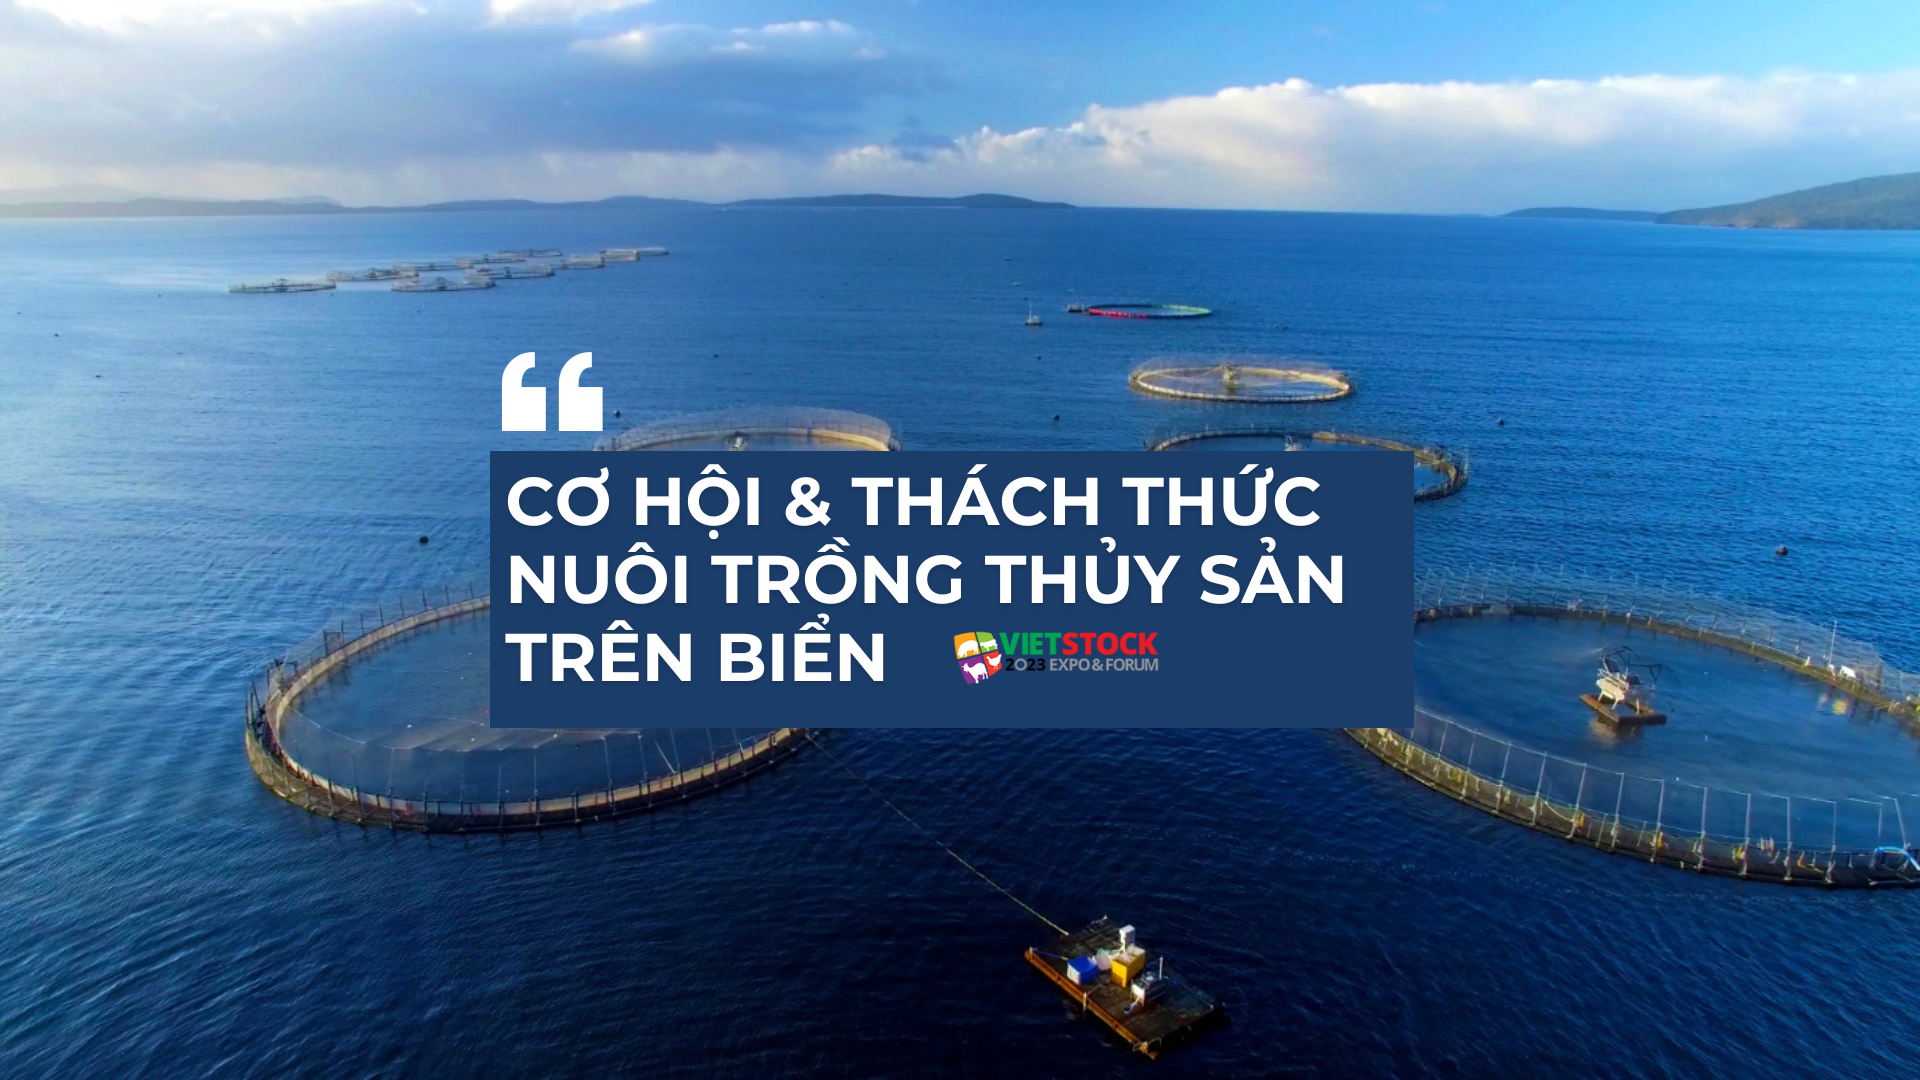 Nuôi trồng thủy sản trên biển: Cơ hội và thách thức cho ngành thủy sản Việt Nam